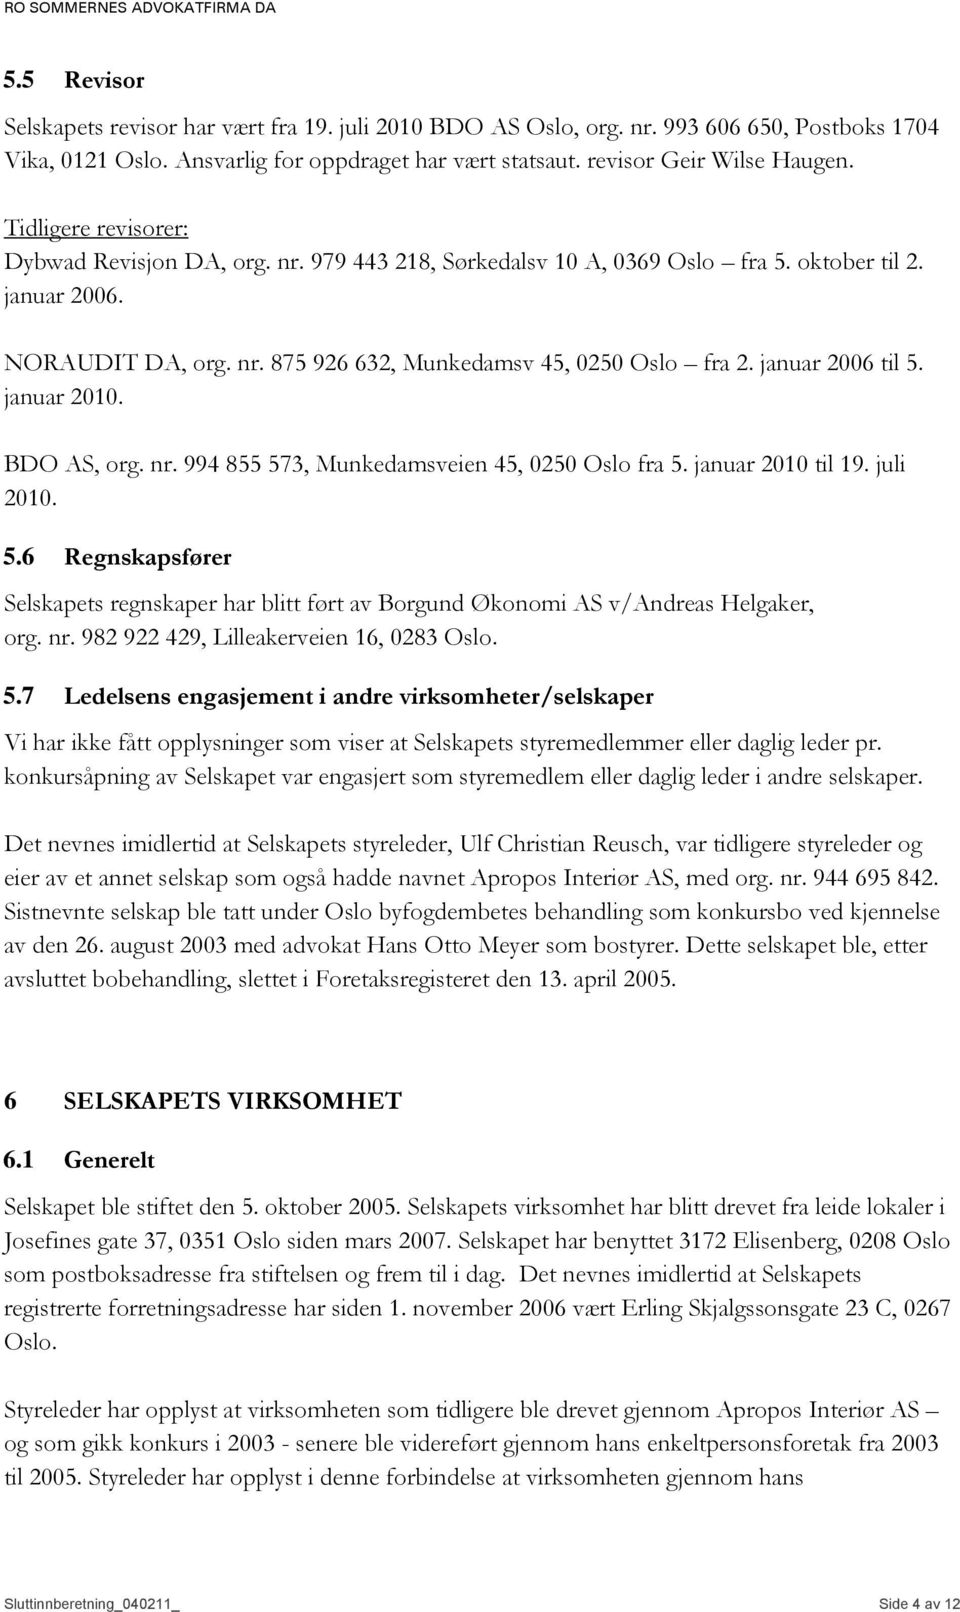 januar 2006 til 5. januar 2010. BDO AS, org. nr. 994 855 573, Munkedamsveien 45, 0250 Oslo fra 5. januar 2010 til 19. juli 2010. 5.6 Regnskapsfører Selskapets regnskaper har blitt ført av Borgund Økonomi AS v/andreas Helgaker, org.